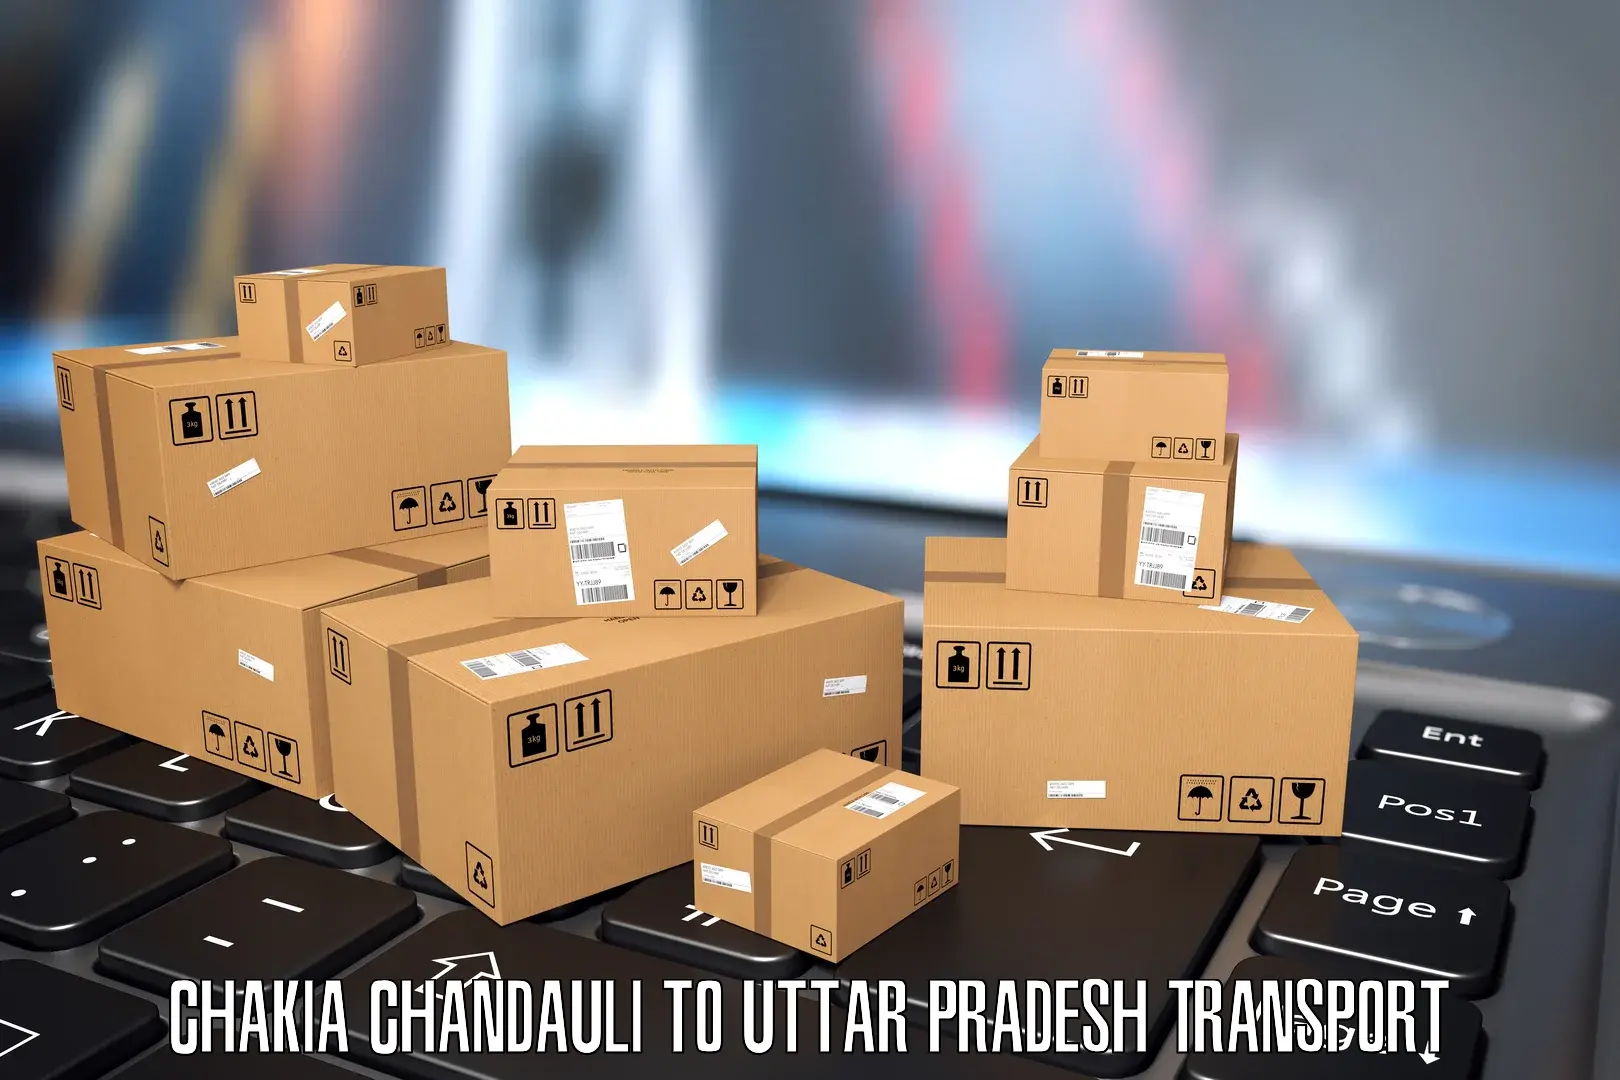 Nearest transport service Chakia Chandauli to Saray Ankil